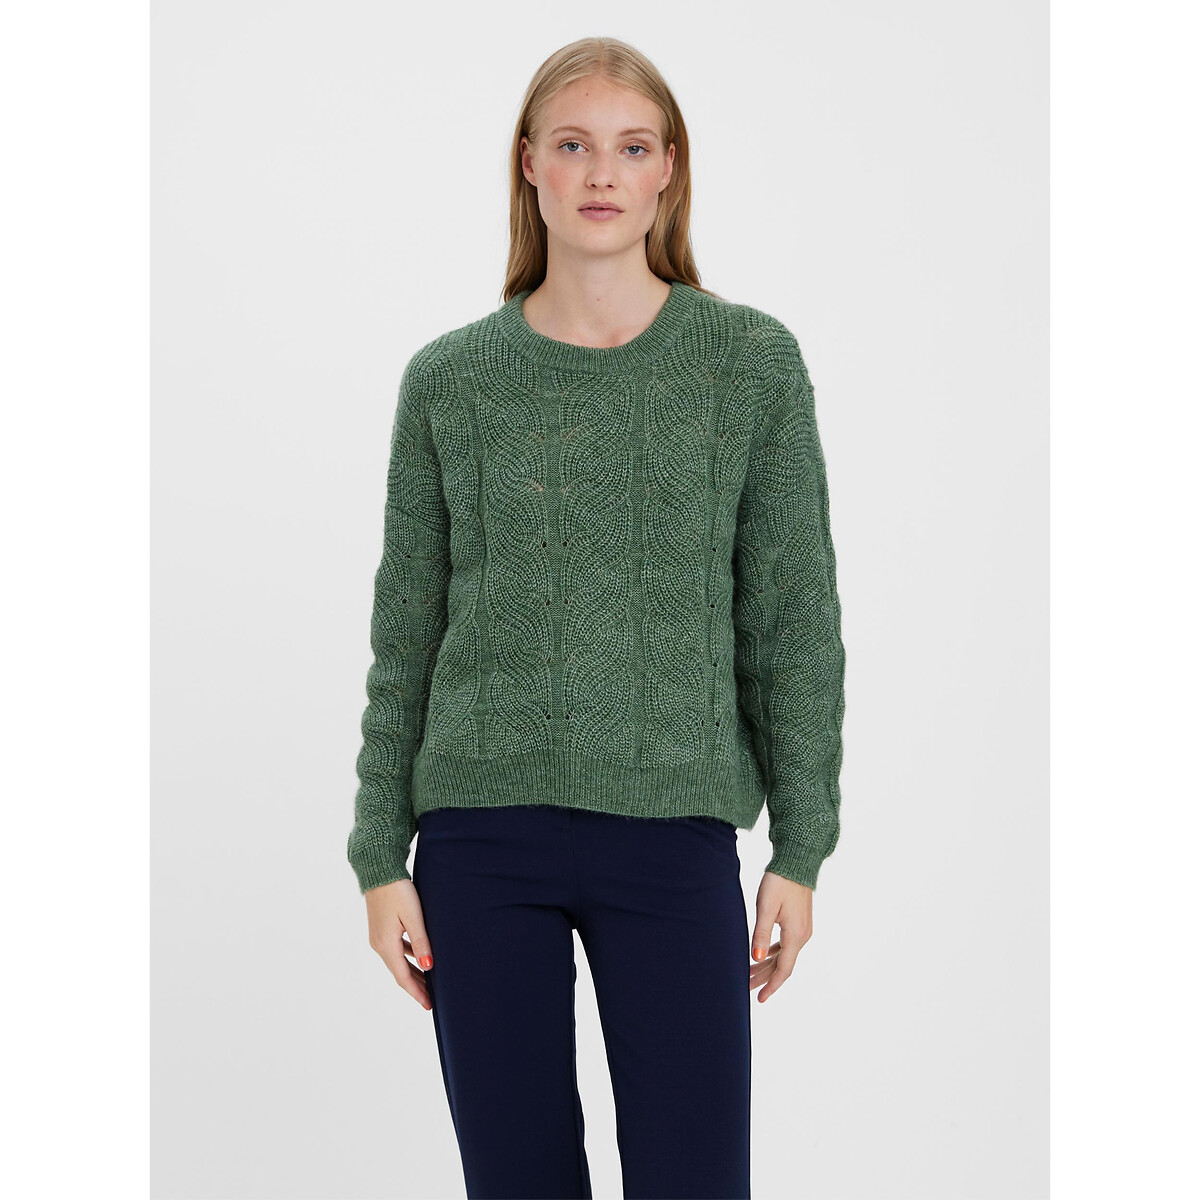 Пуловер С круглым вырезом из ажурного трикотажа M зеленый